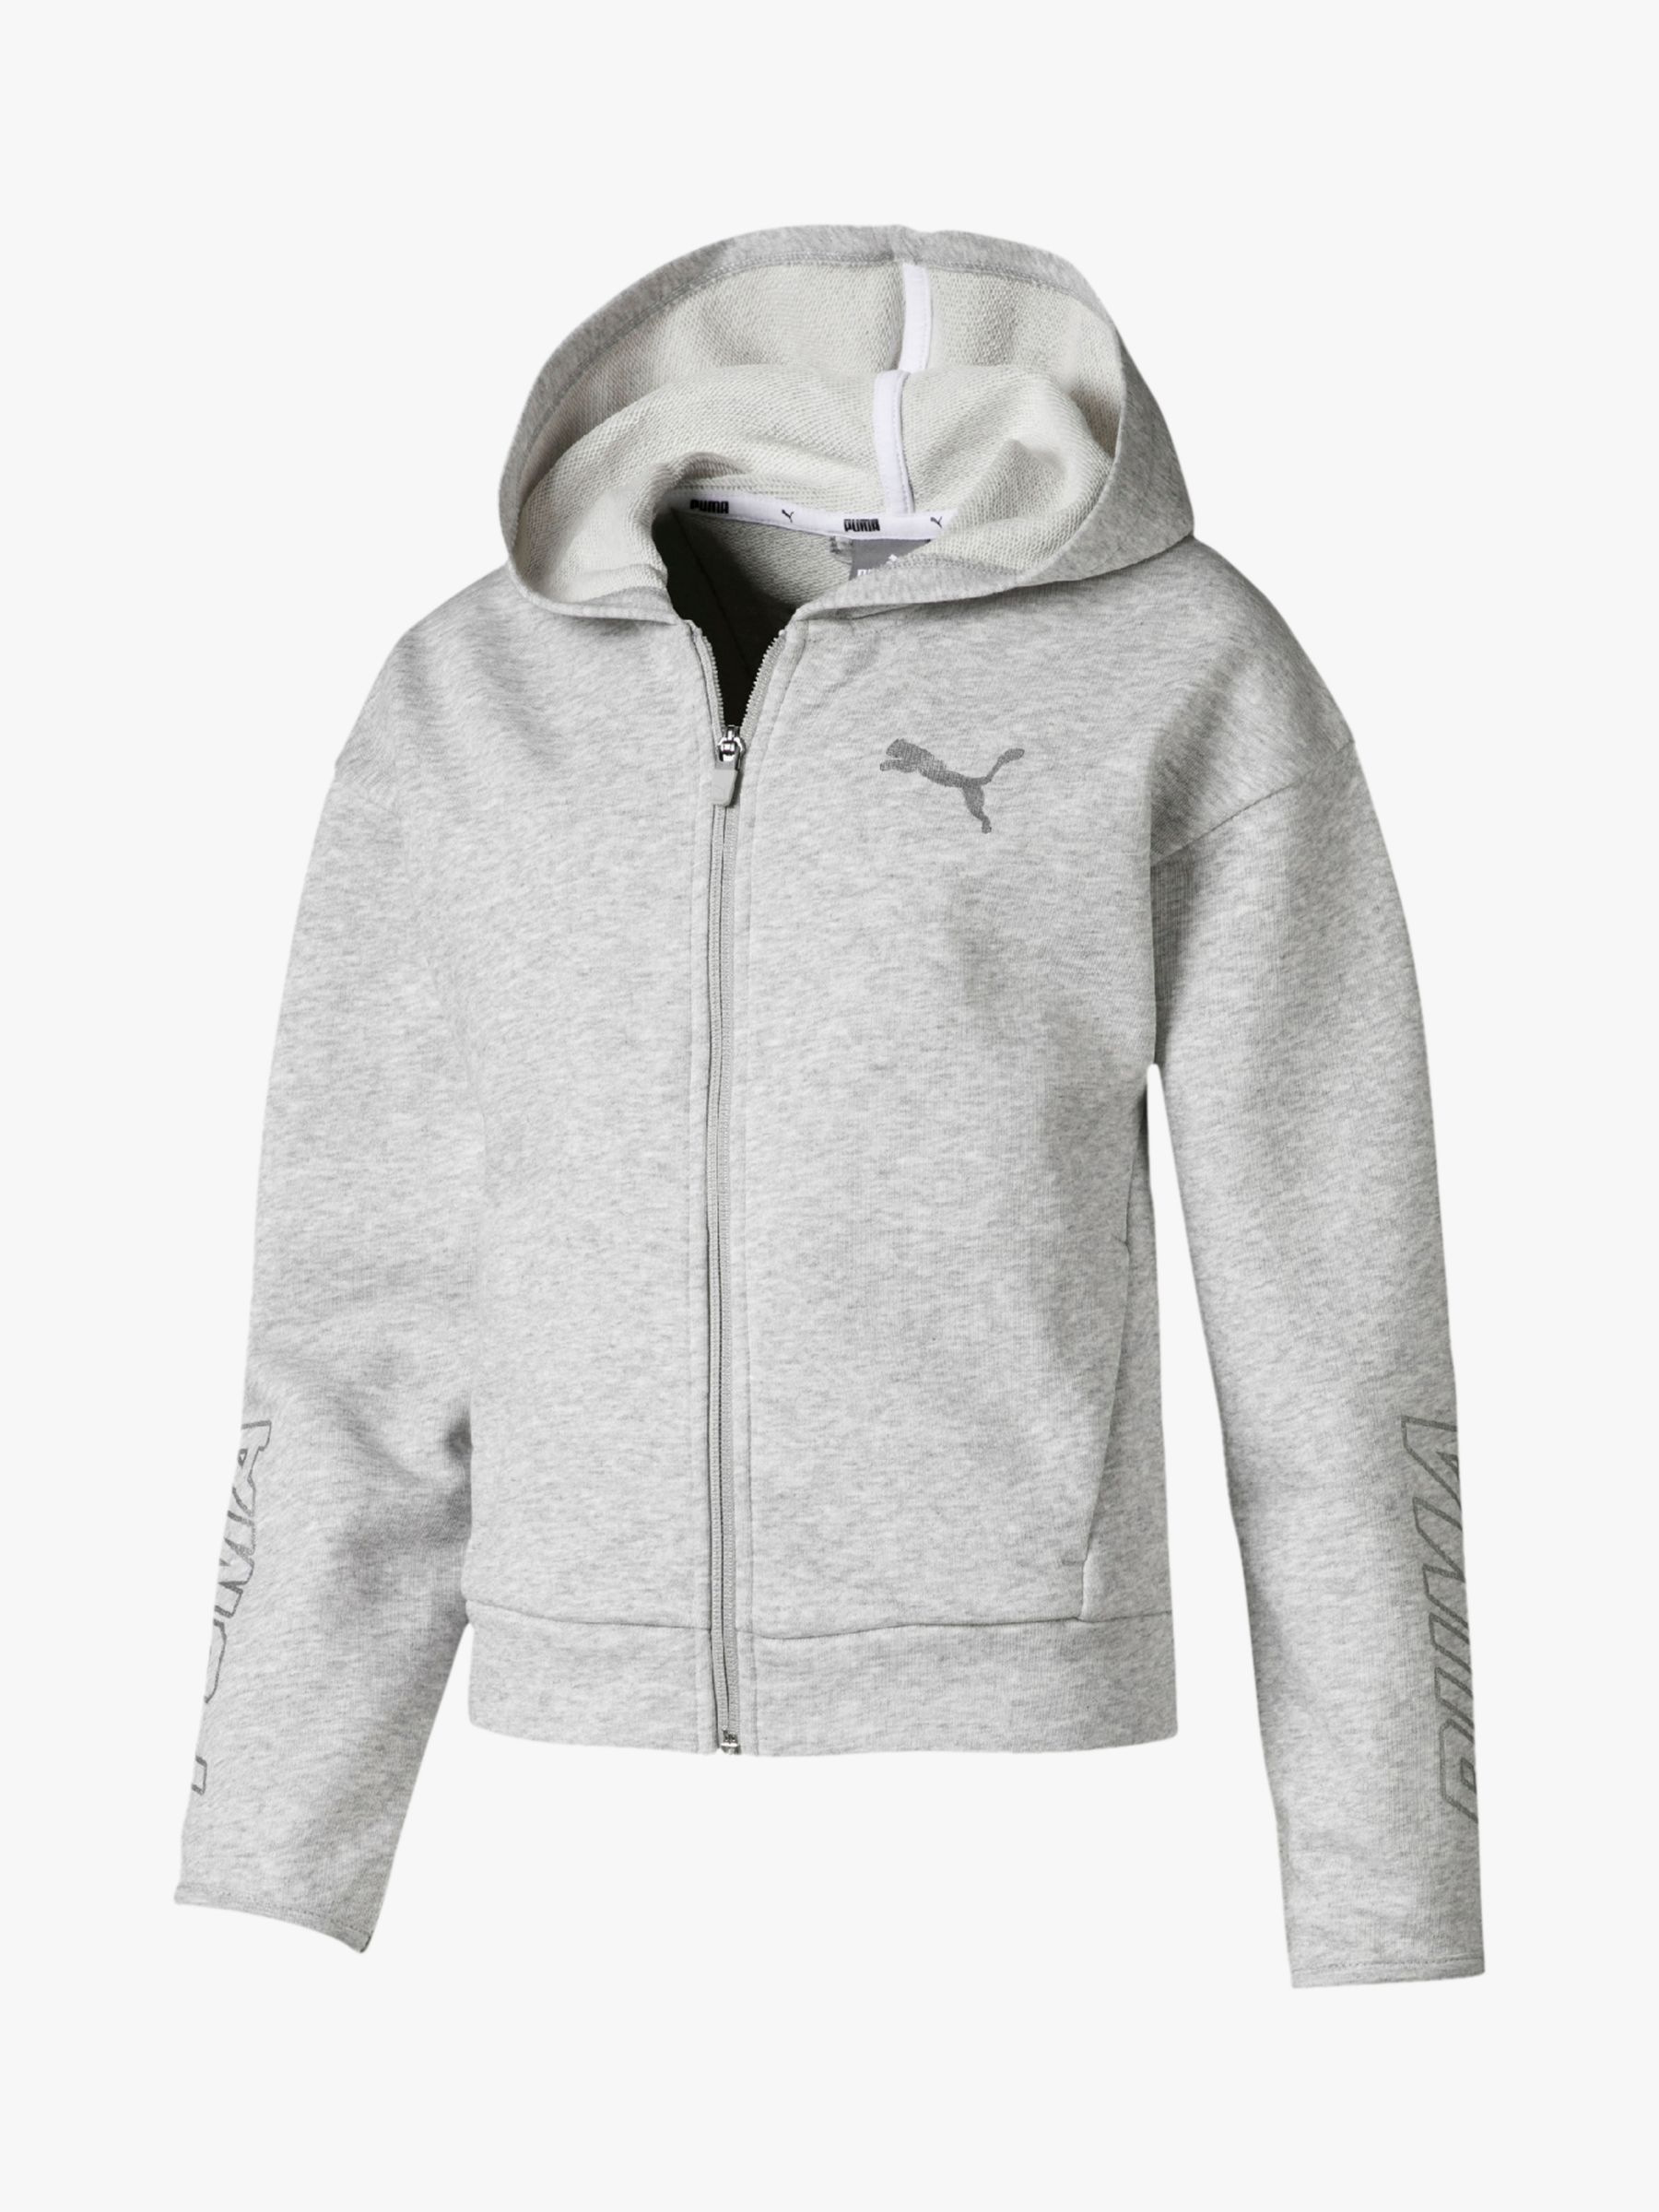 buy puma hoodies online